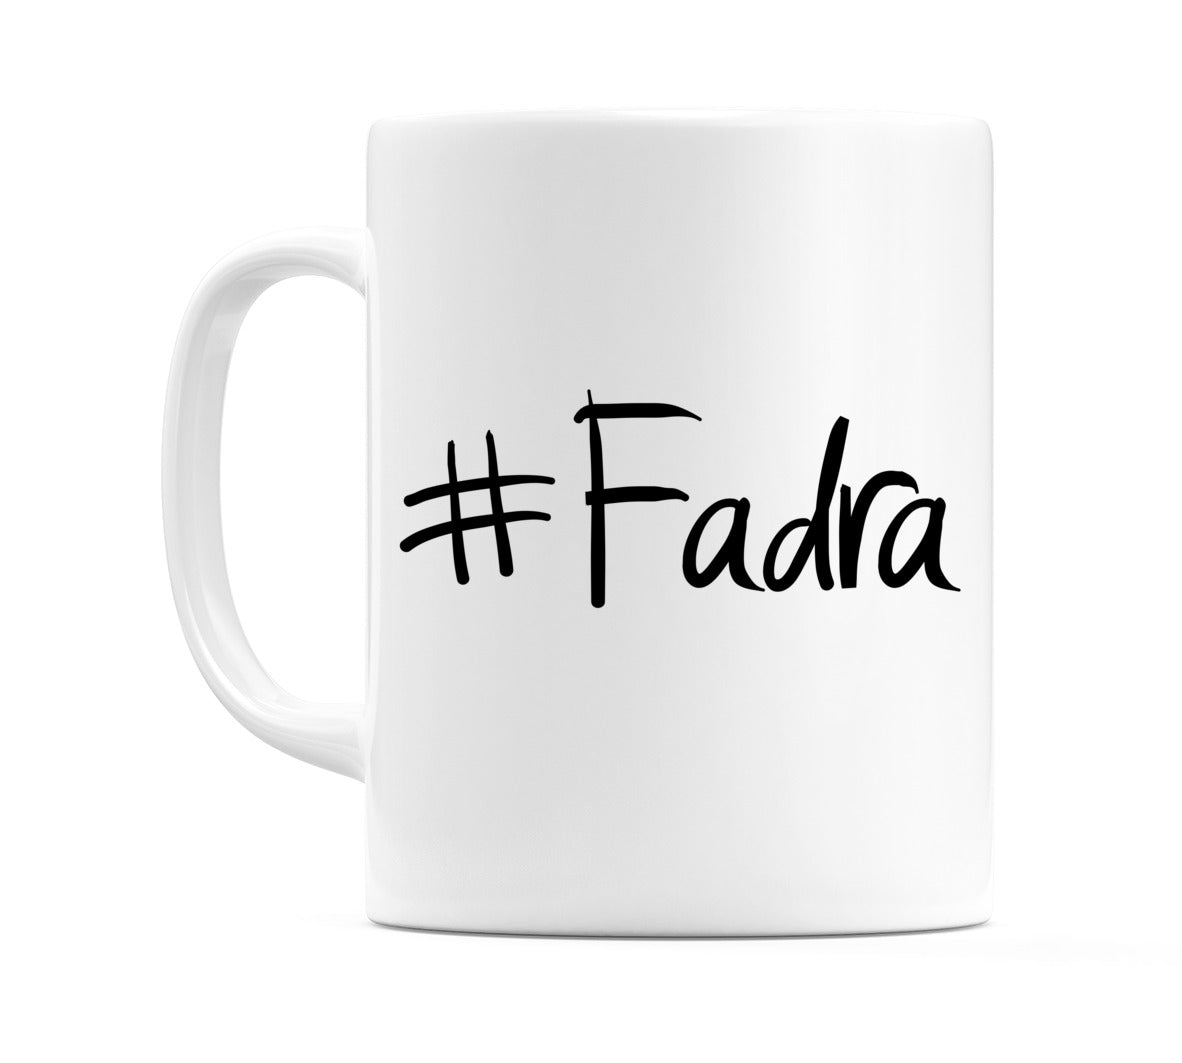 #Fadra Mug